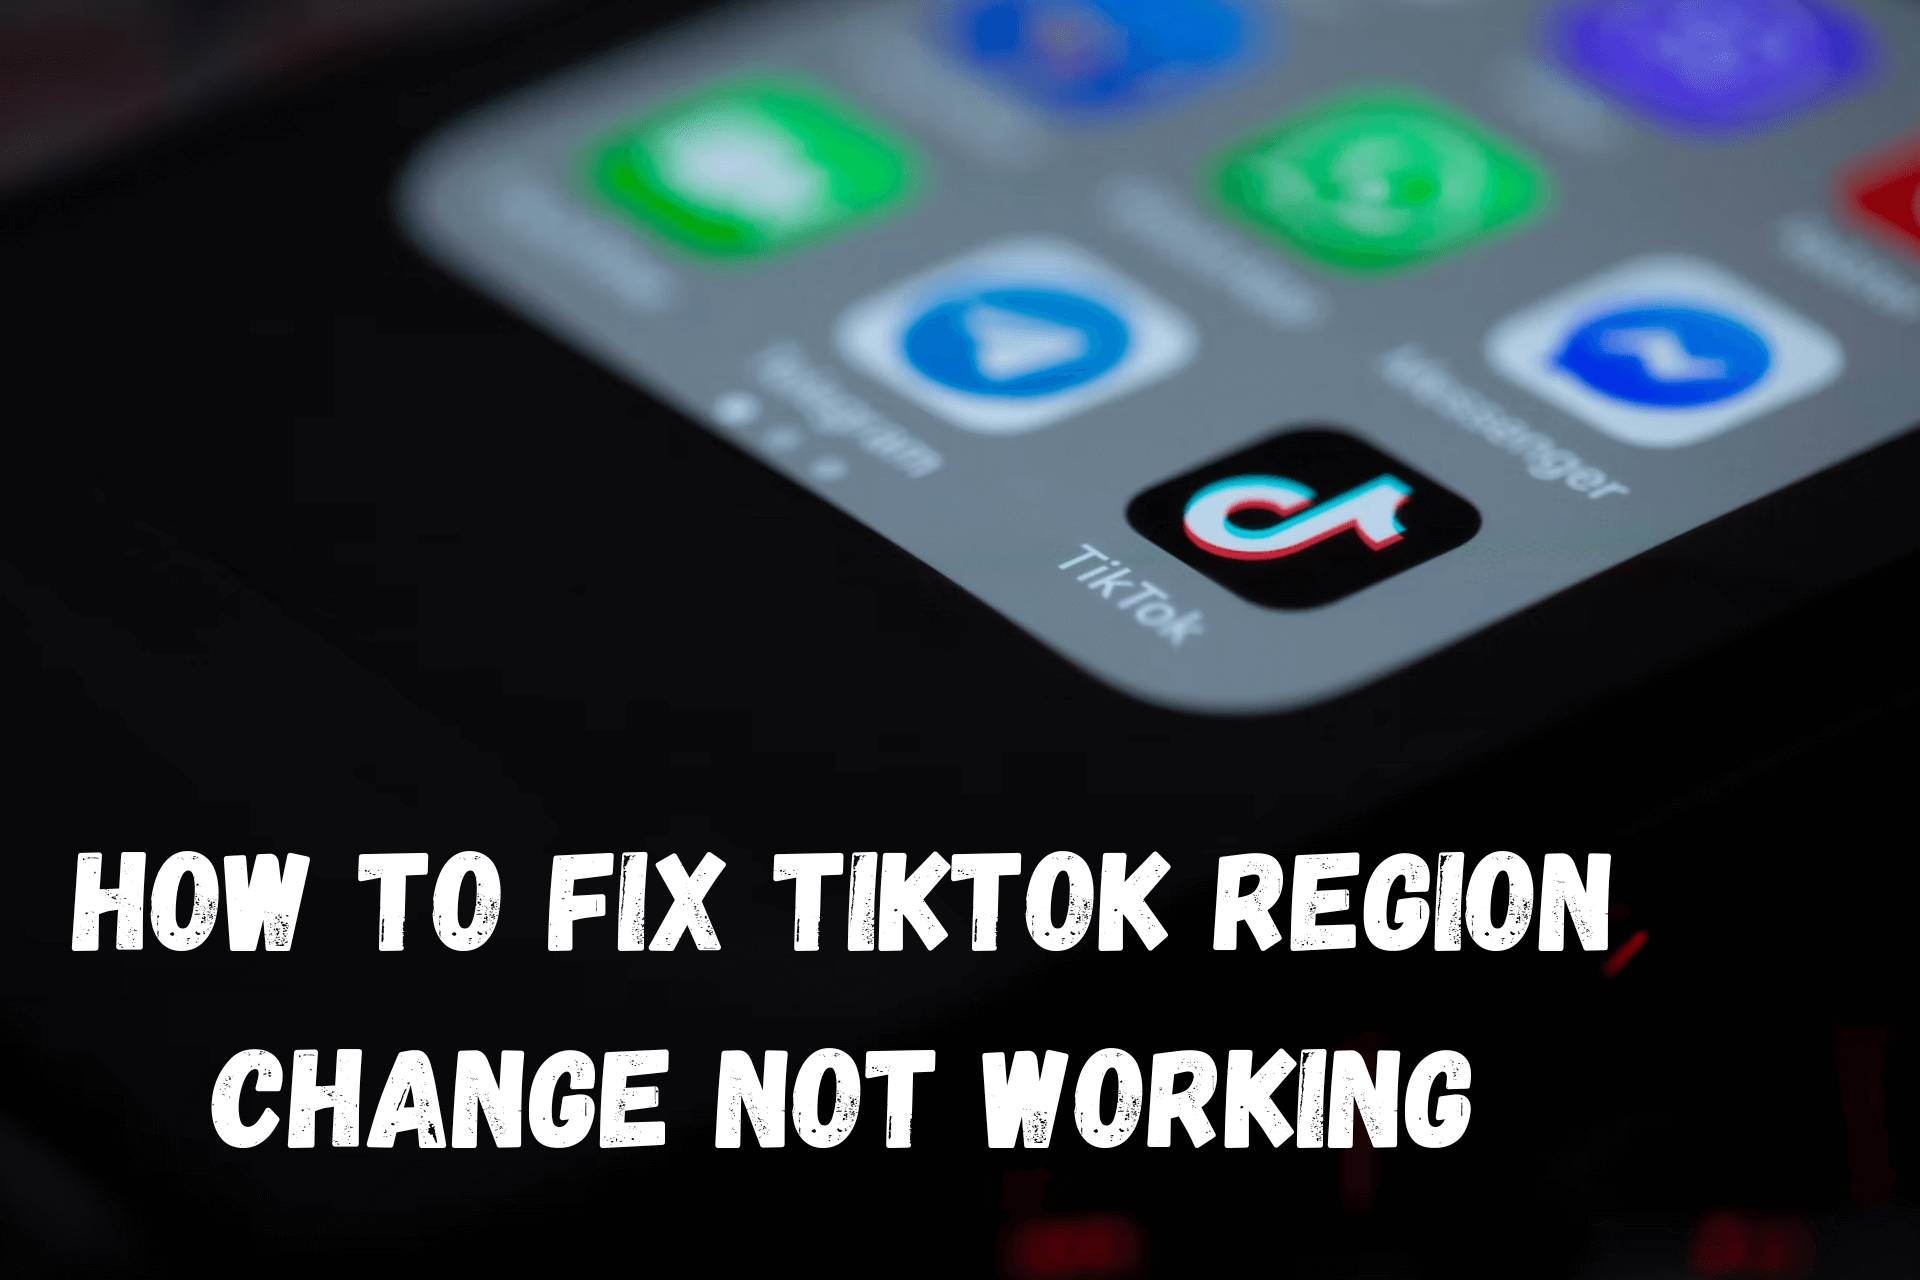 TikTok region change not working